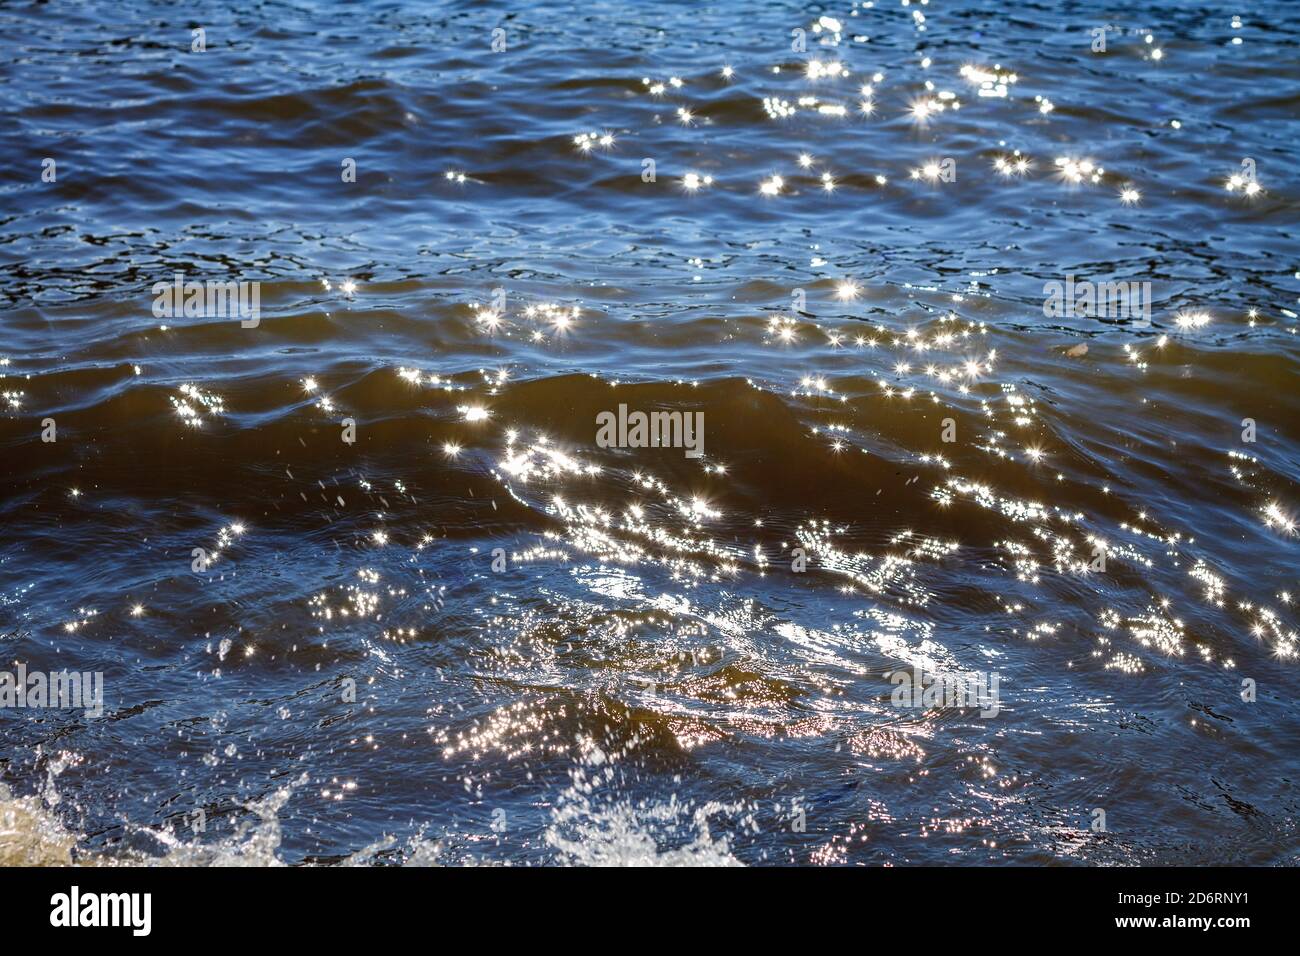 Die Sonne funkelt im blauen Wasser. Abstrakter Hintergrund mit Platz für Text Stockfoto